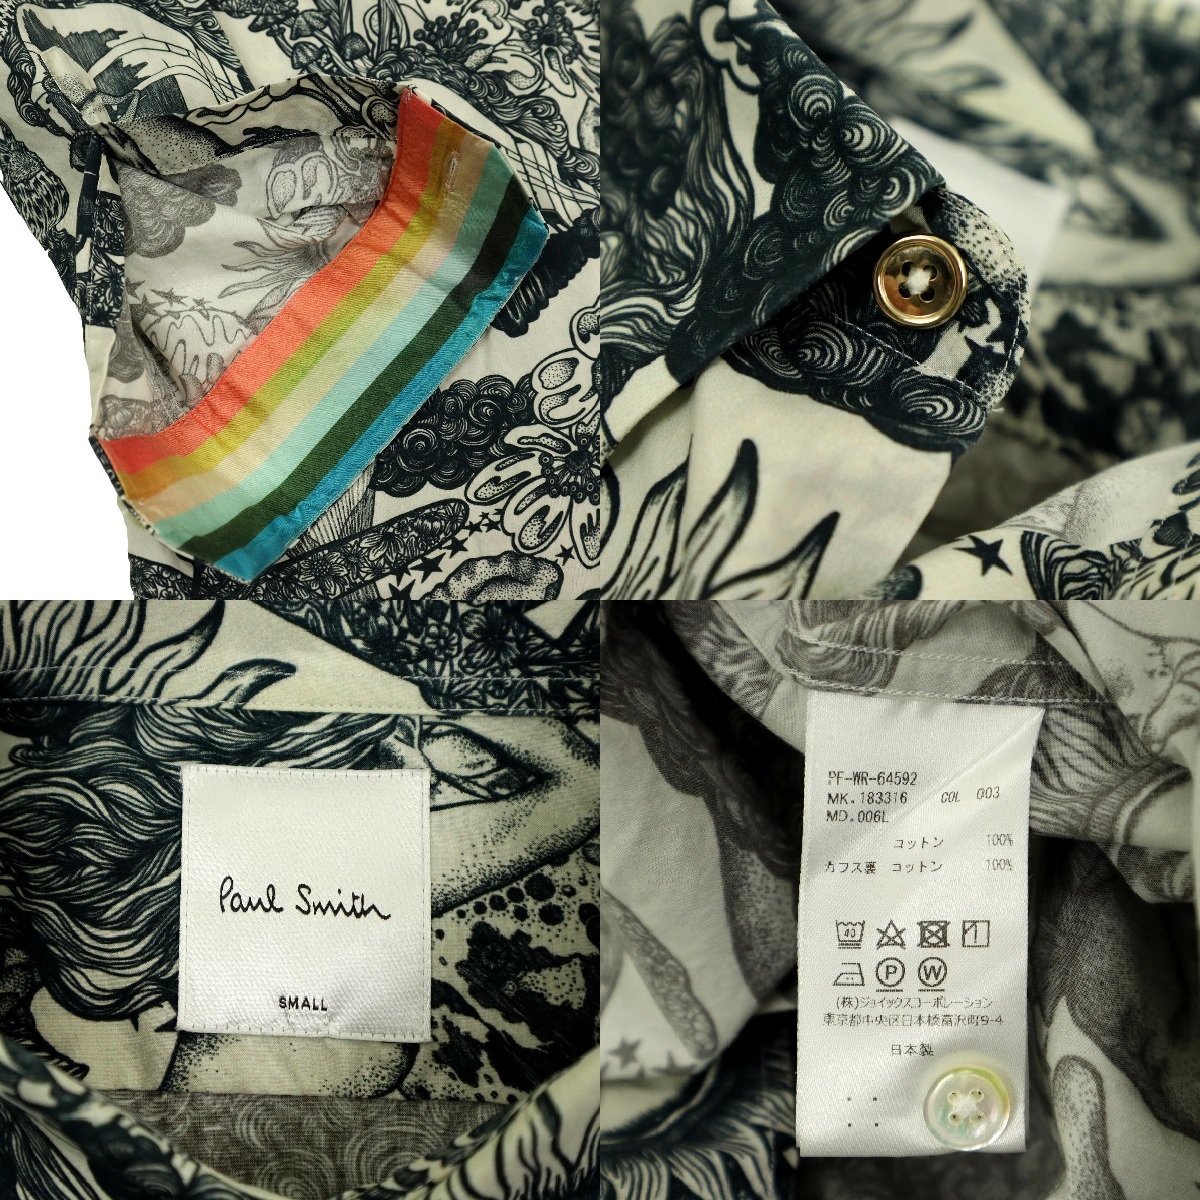 [B2222][ превосходный товар ]Paul Smith Paul Smith рубашка с длинным рукавом общий рисунок солнце PSYCHEDELIC SUN носорог ketelik солнечный 183316 размер S